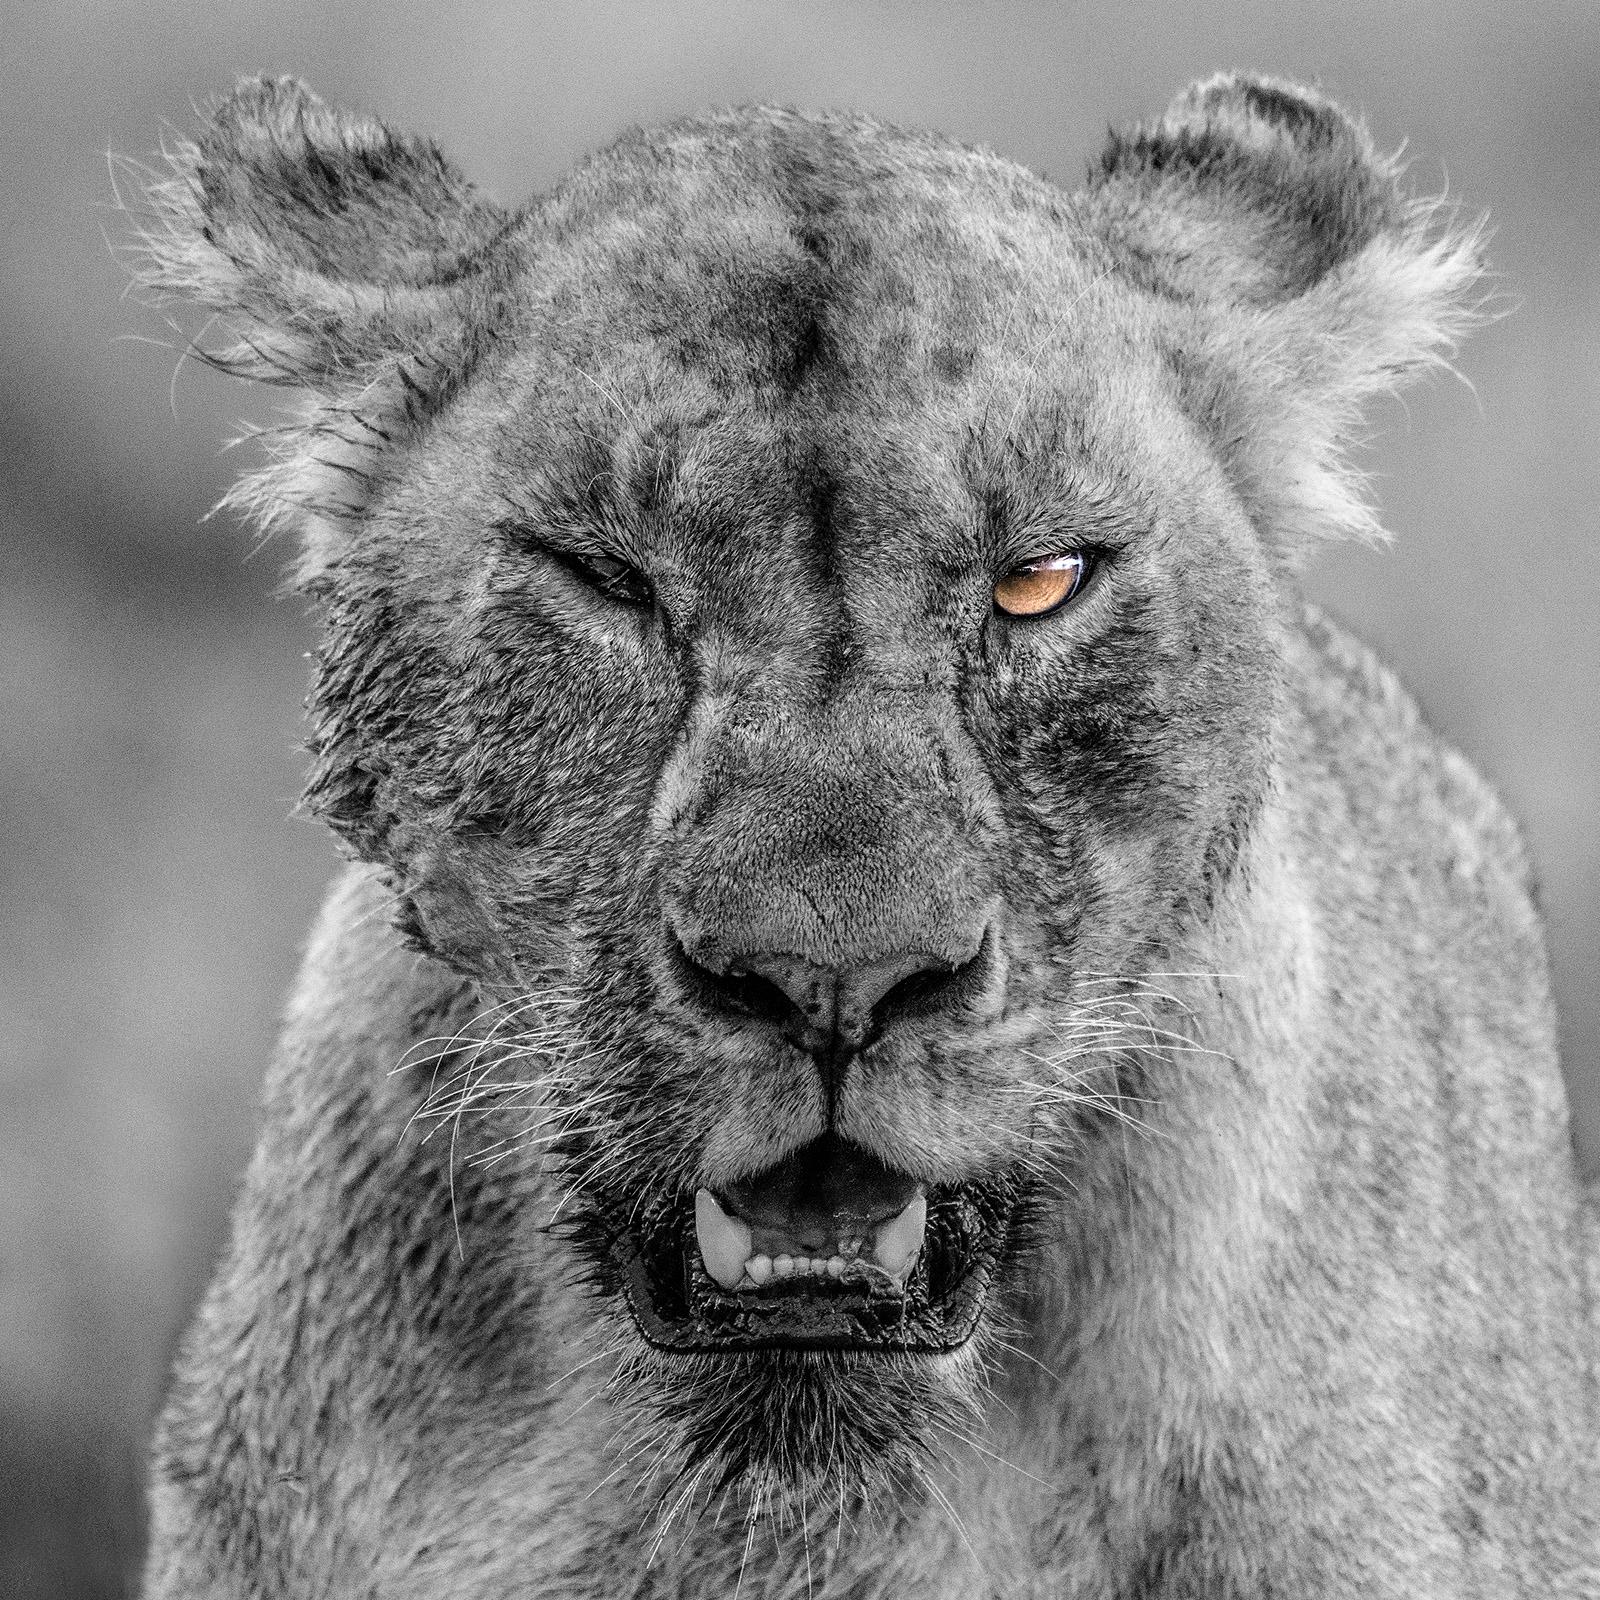 Black and White Photograph Gürdal Bibo - "Rihanna" - Photographie de faune noire et blanche, lion en Afrique, Serengeti 